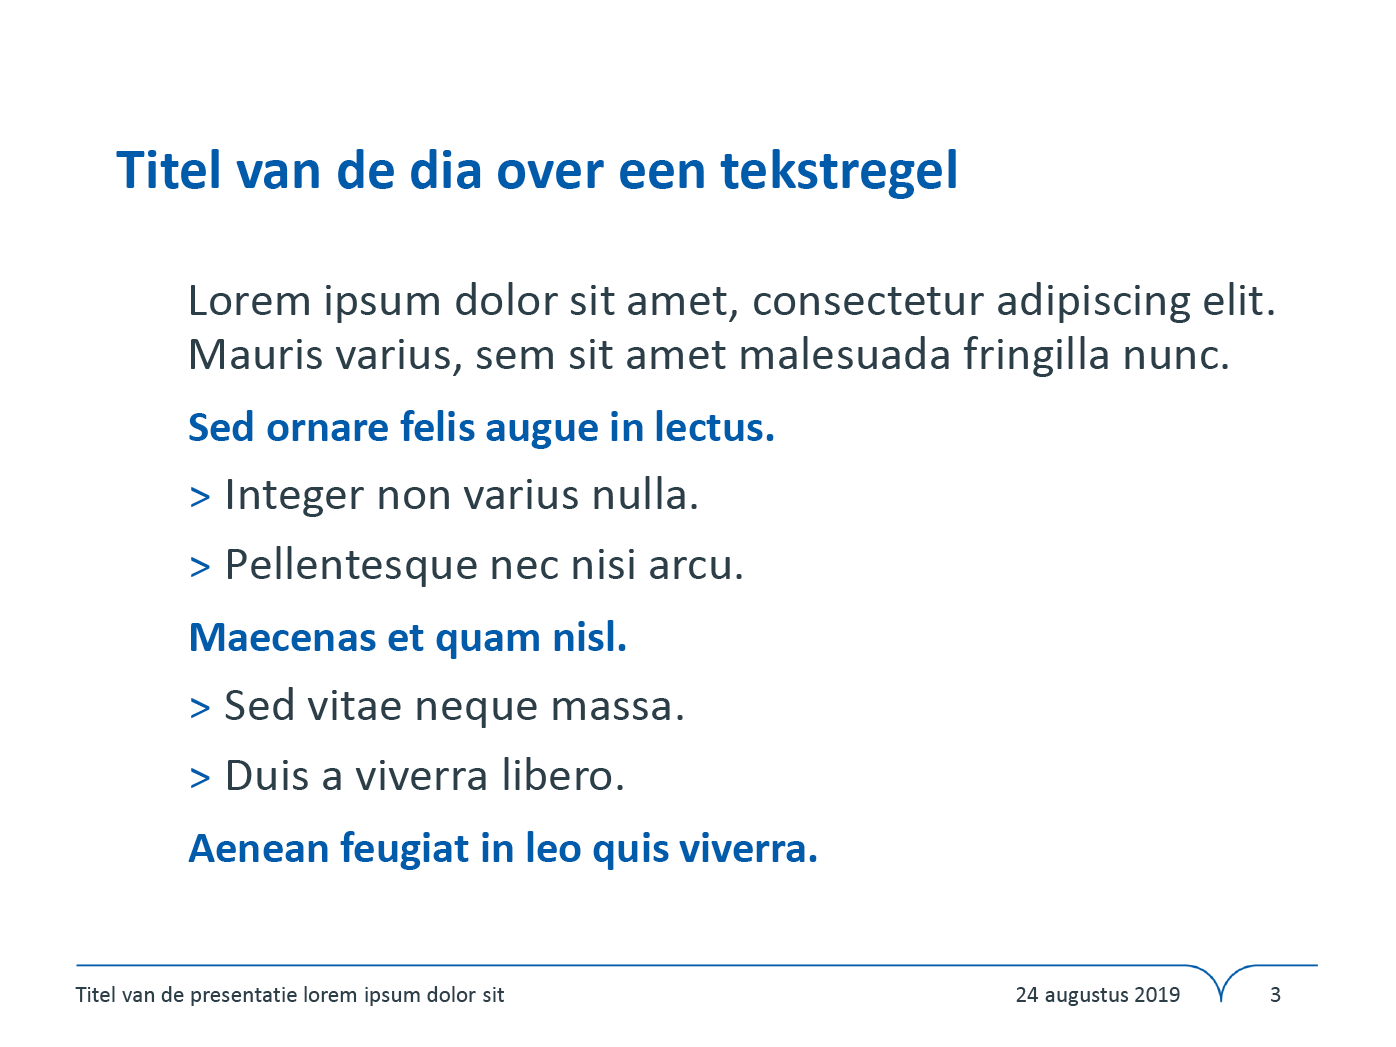 Dia-type "Basisdia", gepersonaliseerd voor de submerken van het secundair onderwijs. Powerpoint-sjabloon van de Stad Gent.